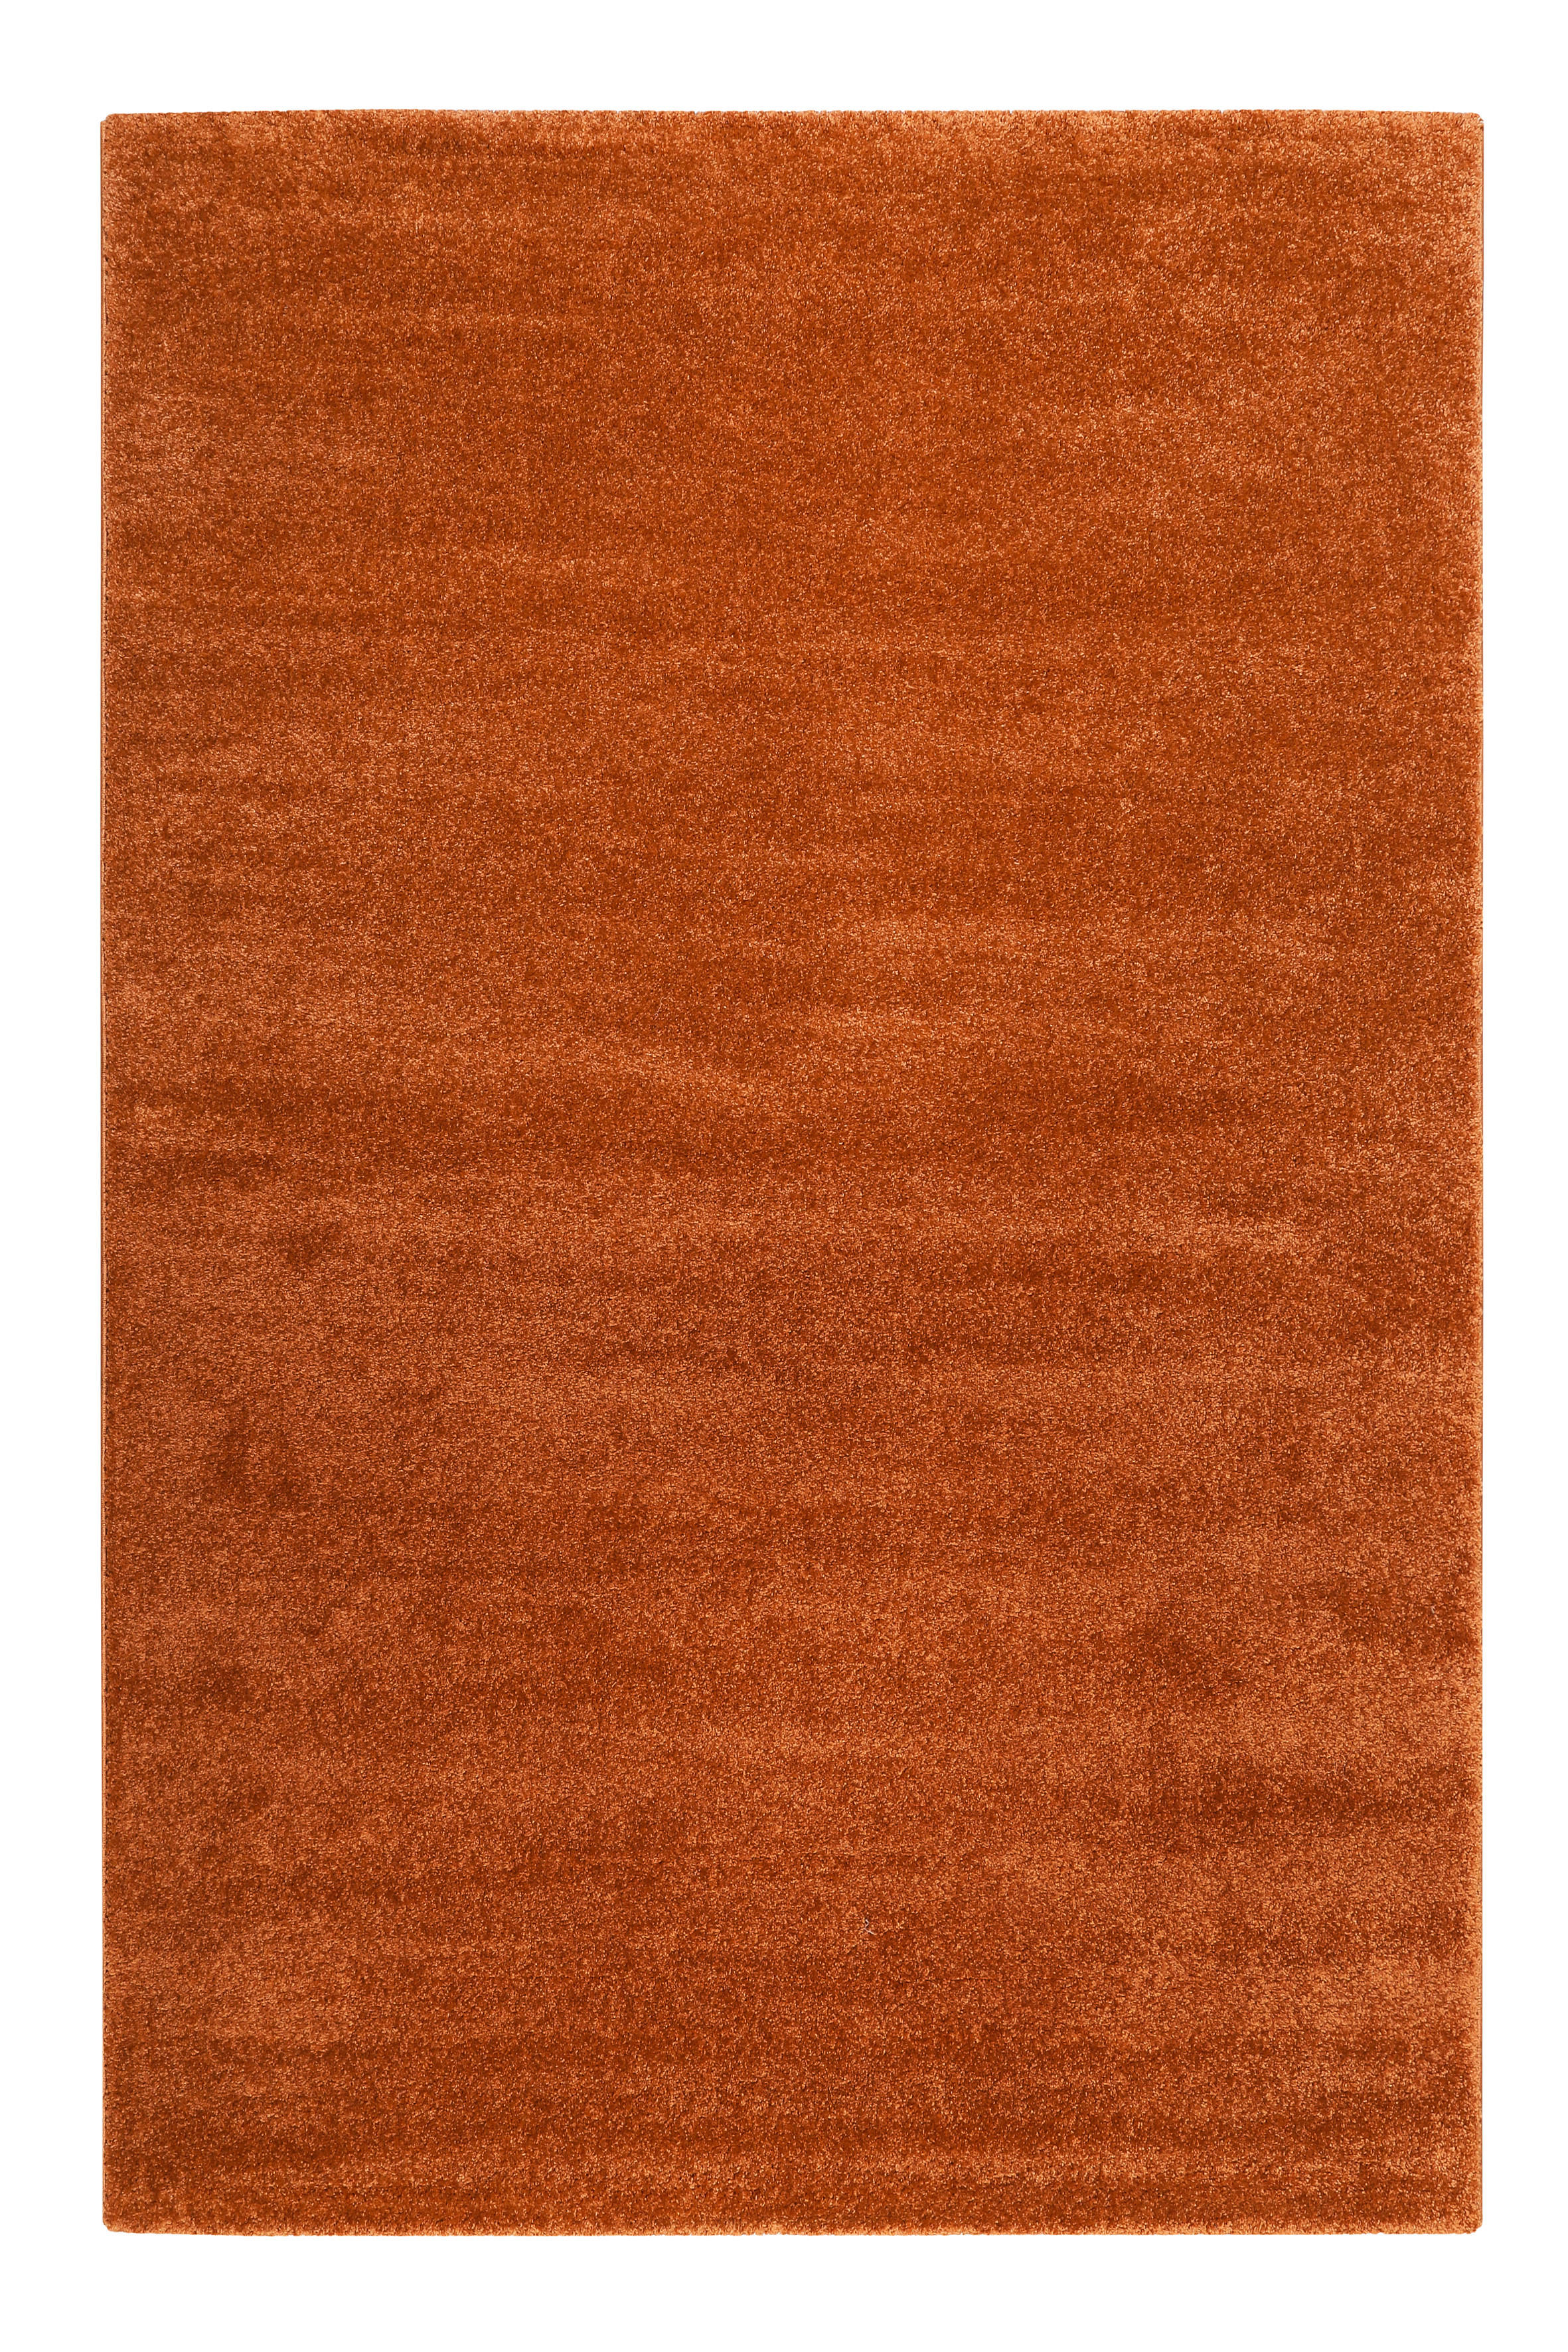 WEBTEPPICH 120/170 cm Esprit  - Orange, KONVENTIONELL, Textil (120/170cm) - Esprit